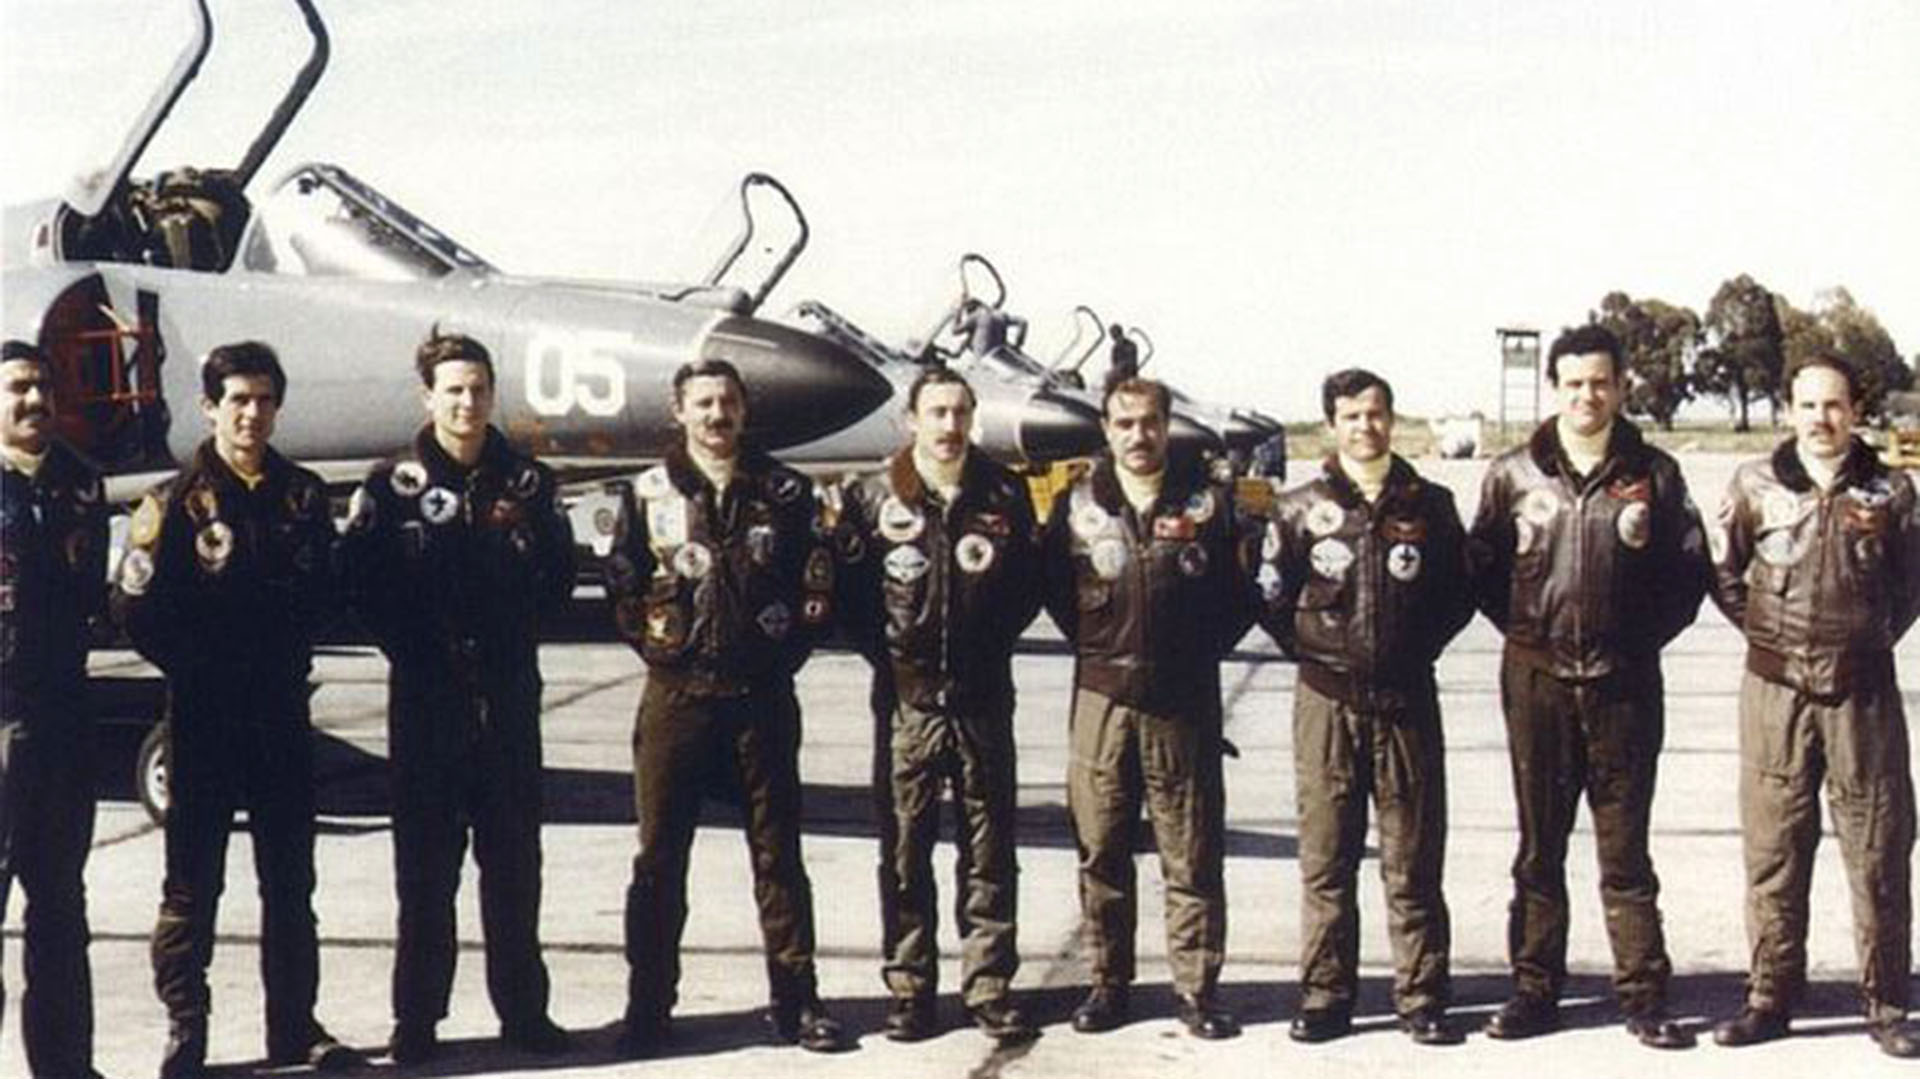 Malvinas secreta: el grupo comando inglés que llegó a Tierra del Fuego para matar a pilotos argentinos y destruir aviones